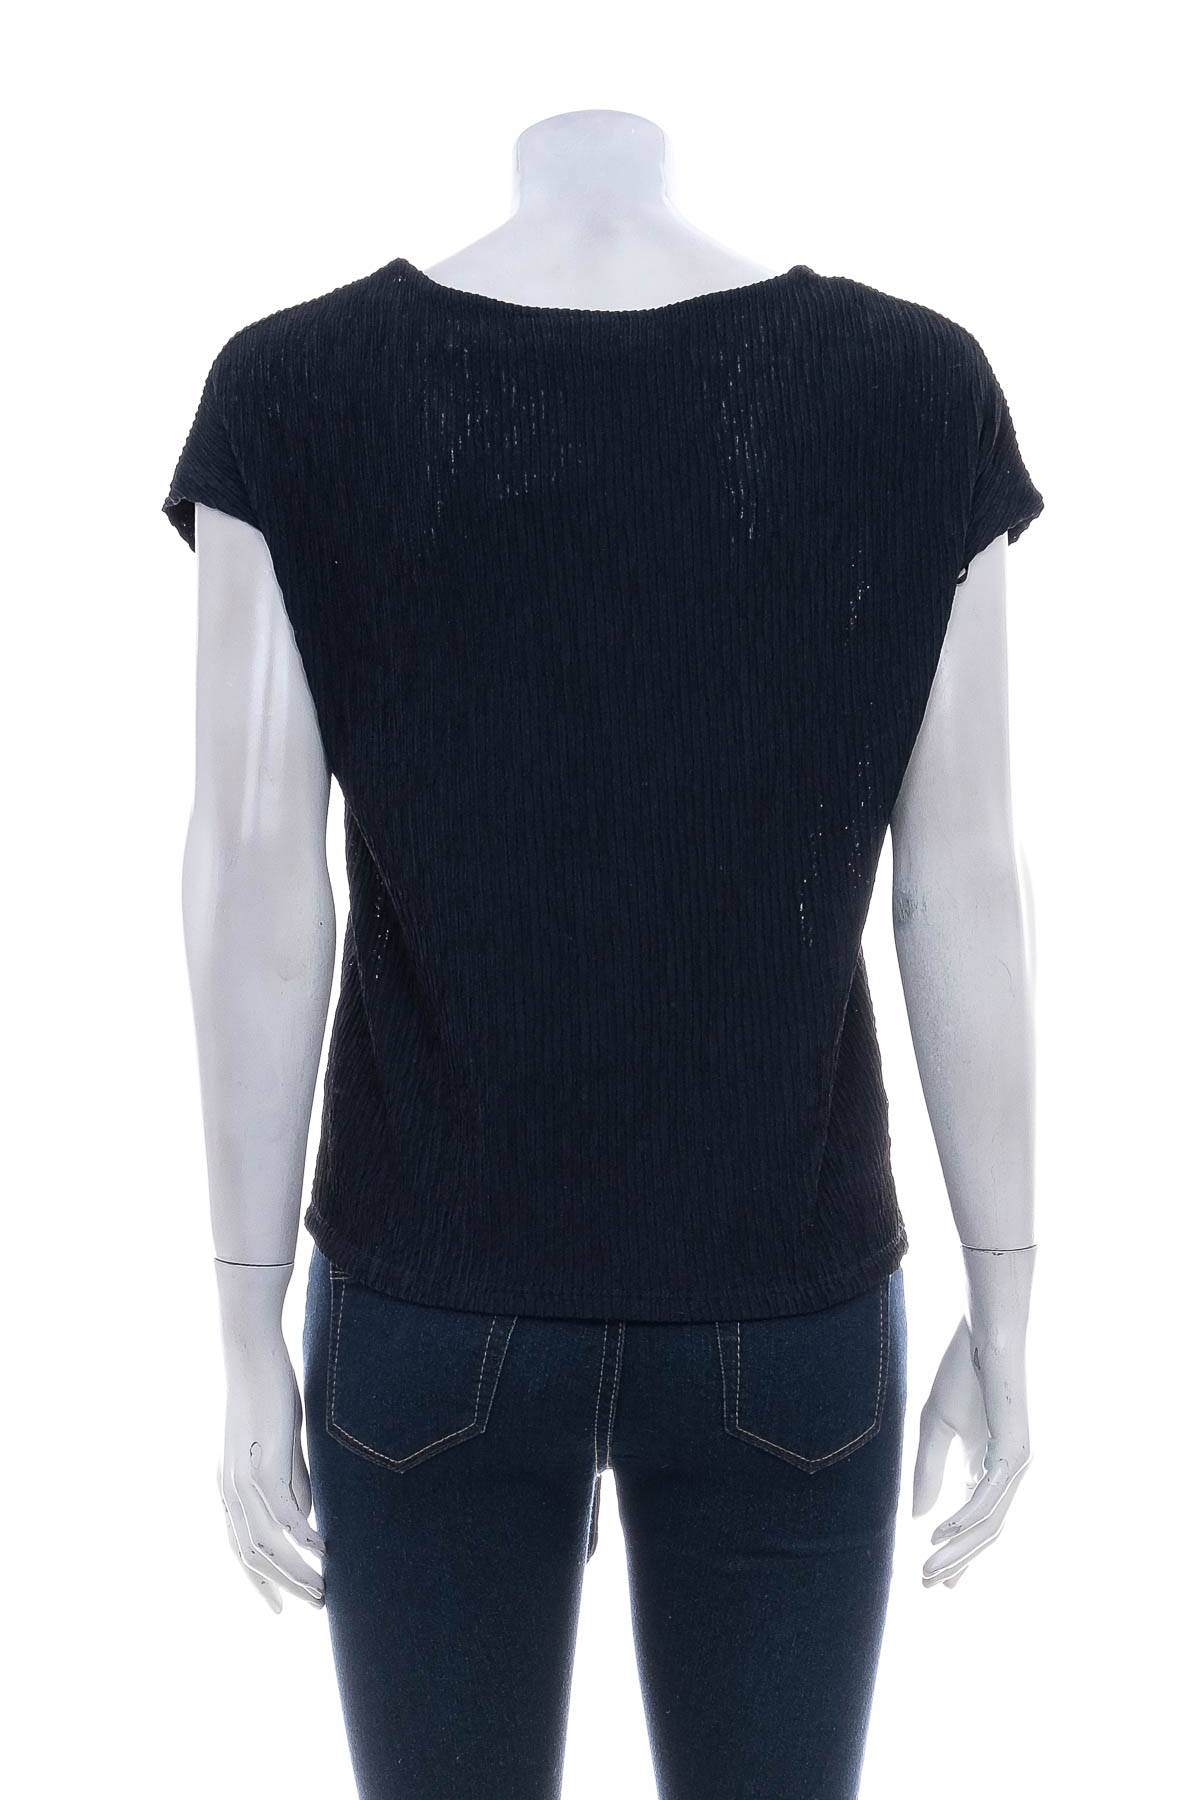 Γυναικεία μπλούζα - Bpc selection bonprix collection - 1